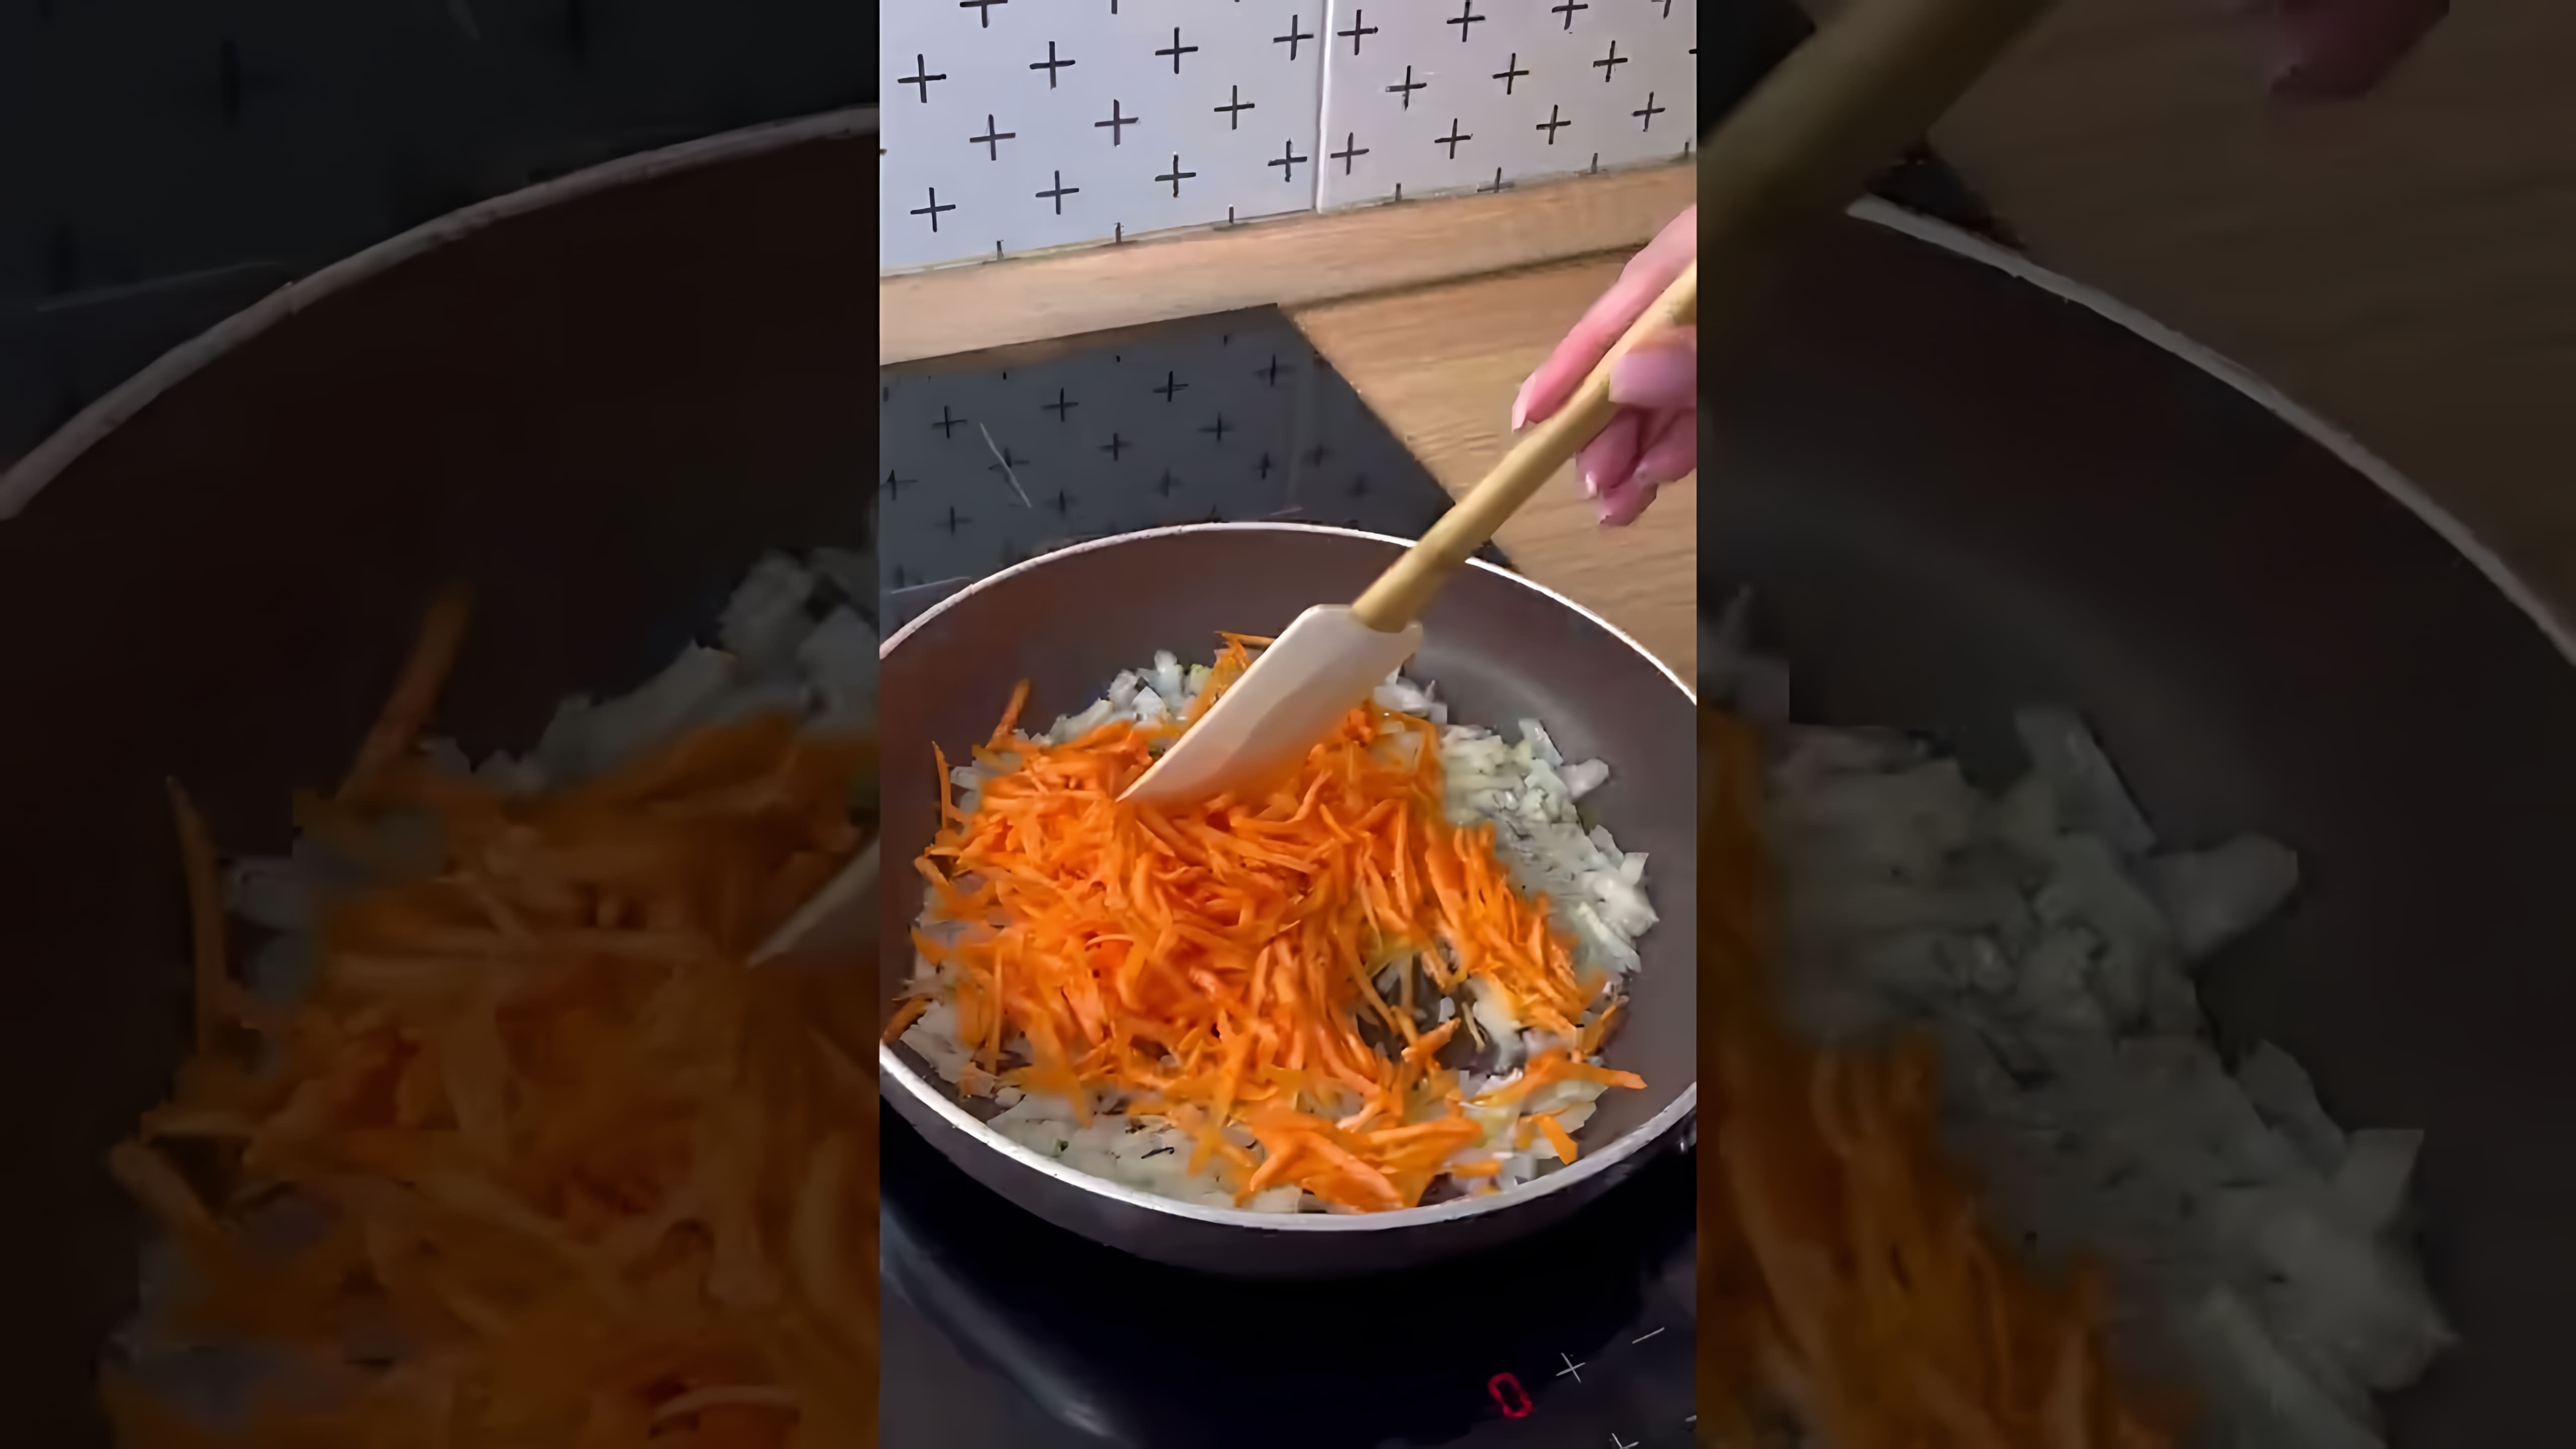 В этом видео демонстрируется рецепт приготовления сырного супа